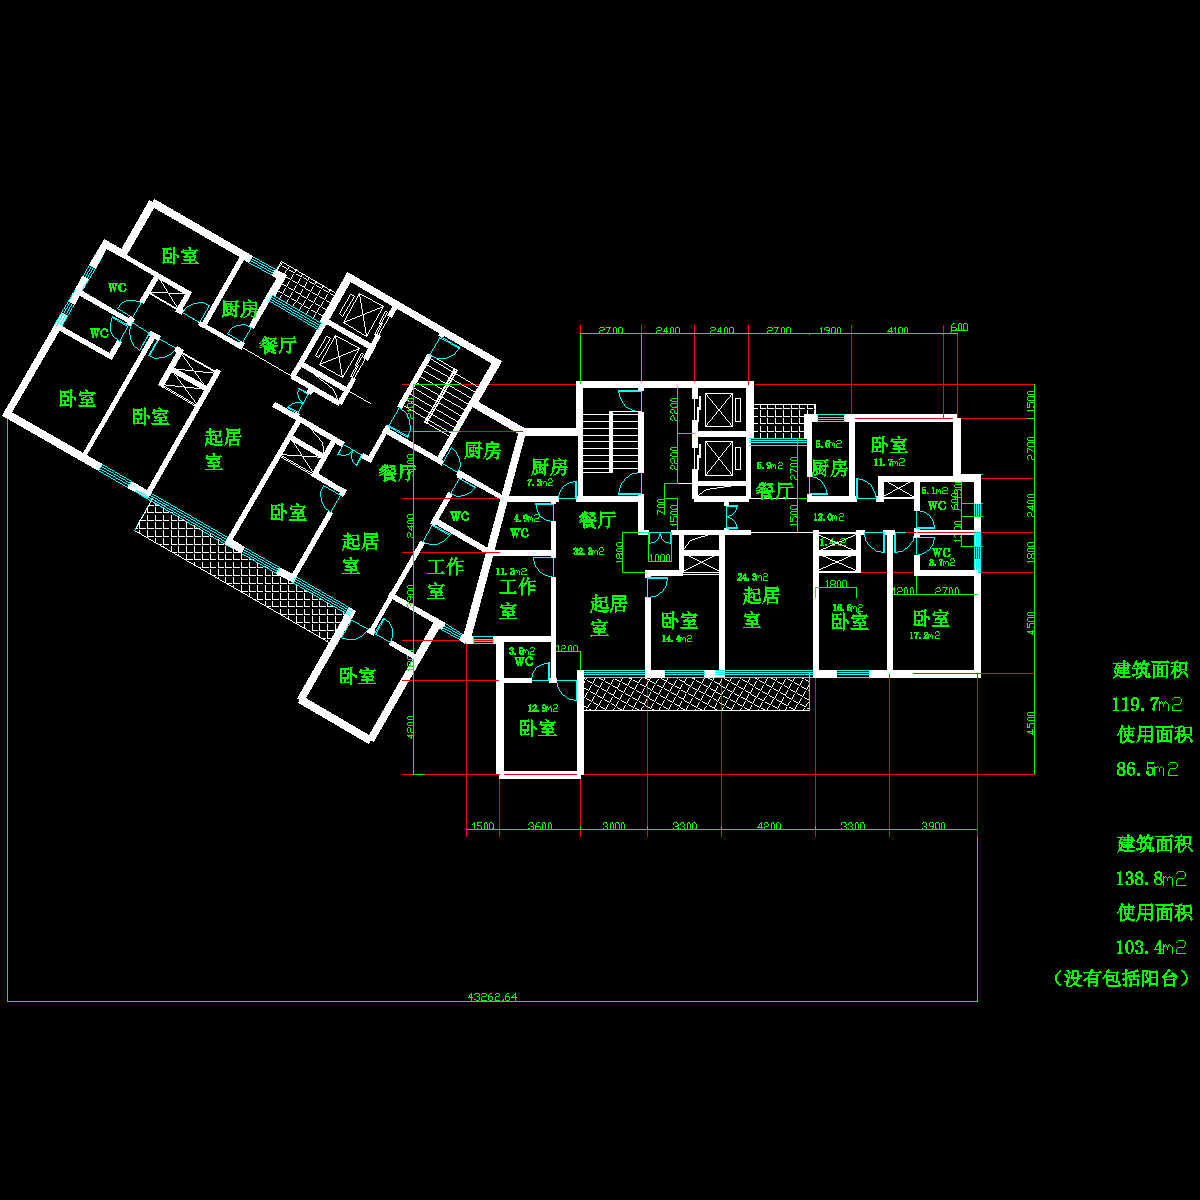 塔式高层一梯二户有工作室户型CAD图纸(120/87)